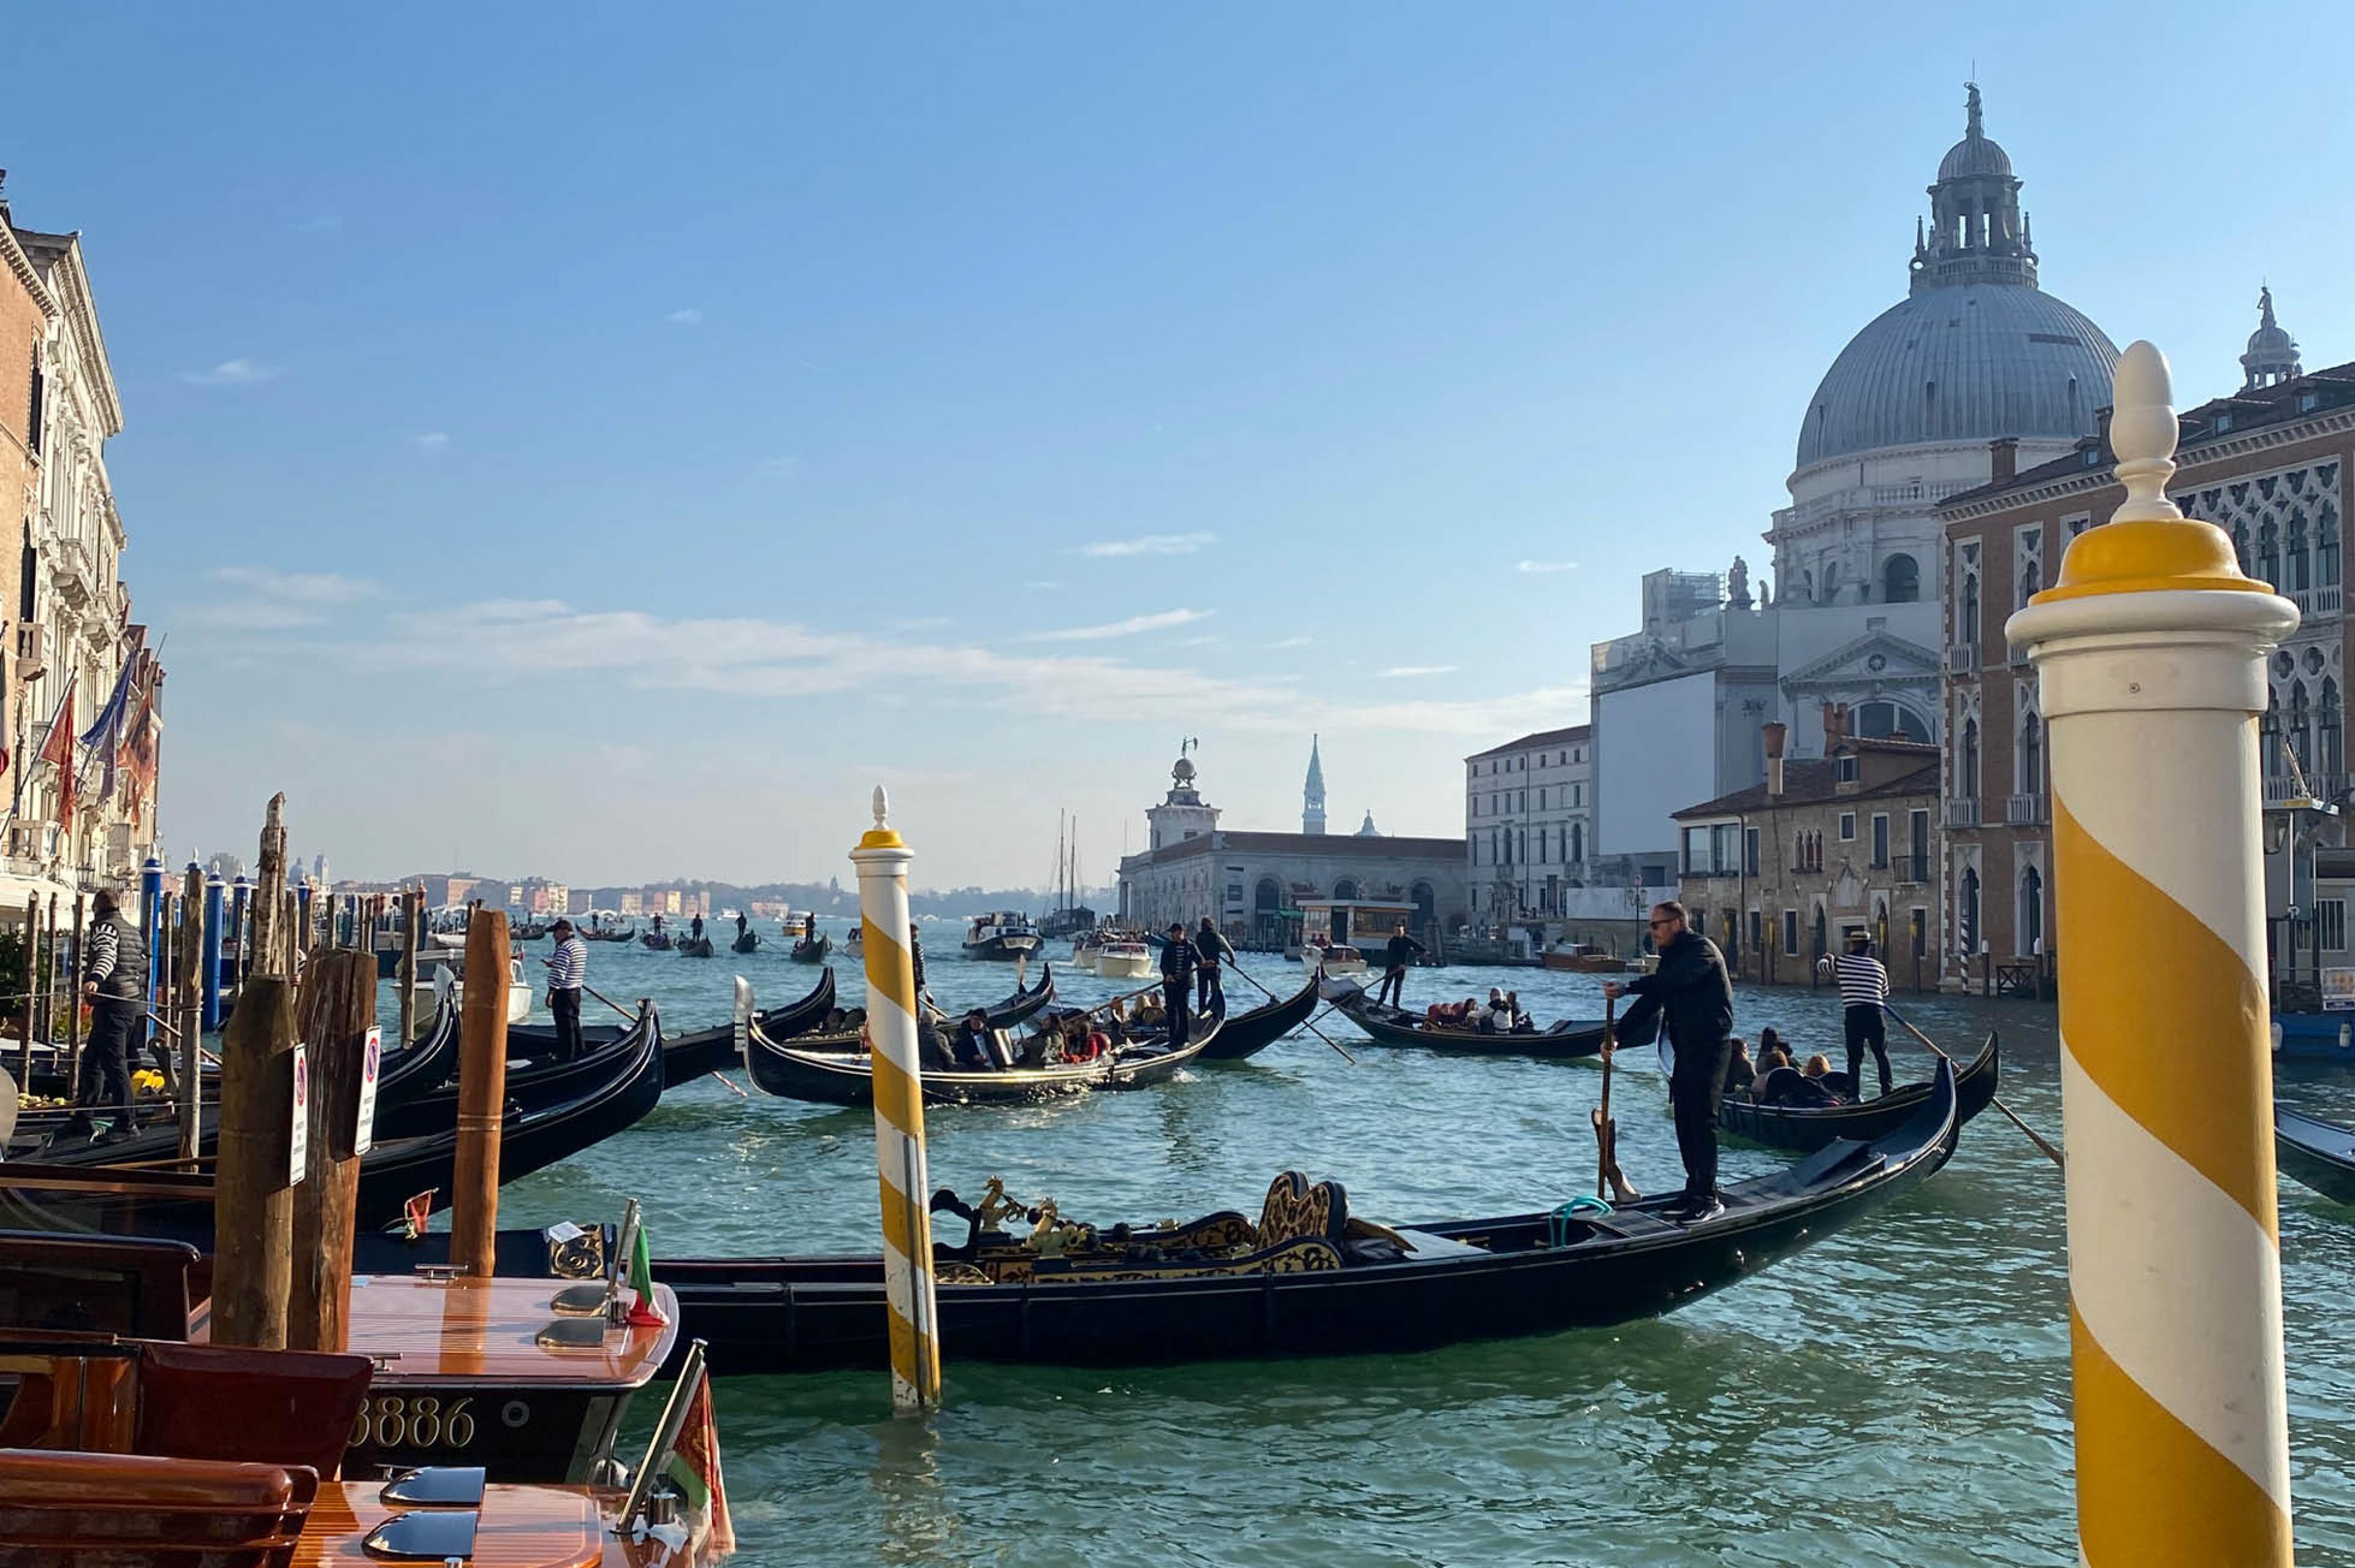 Gondolas in Venice's Grand canal